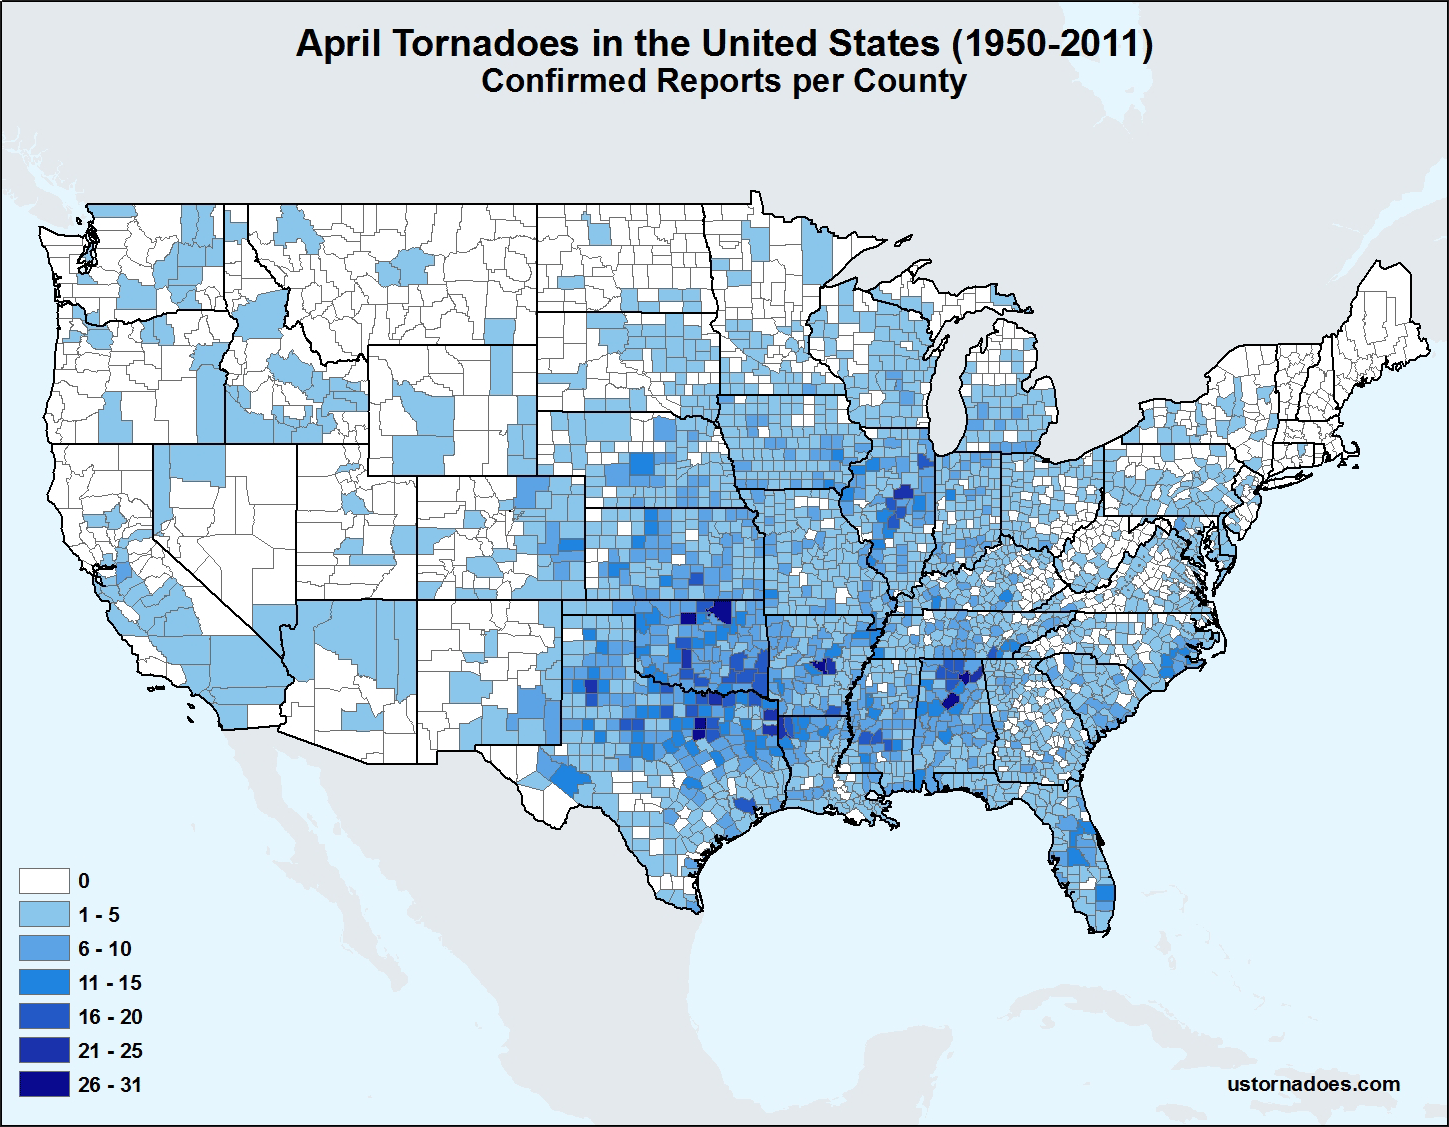 April Tornado Risk Map